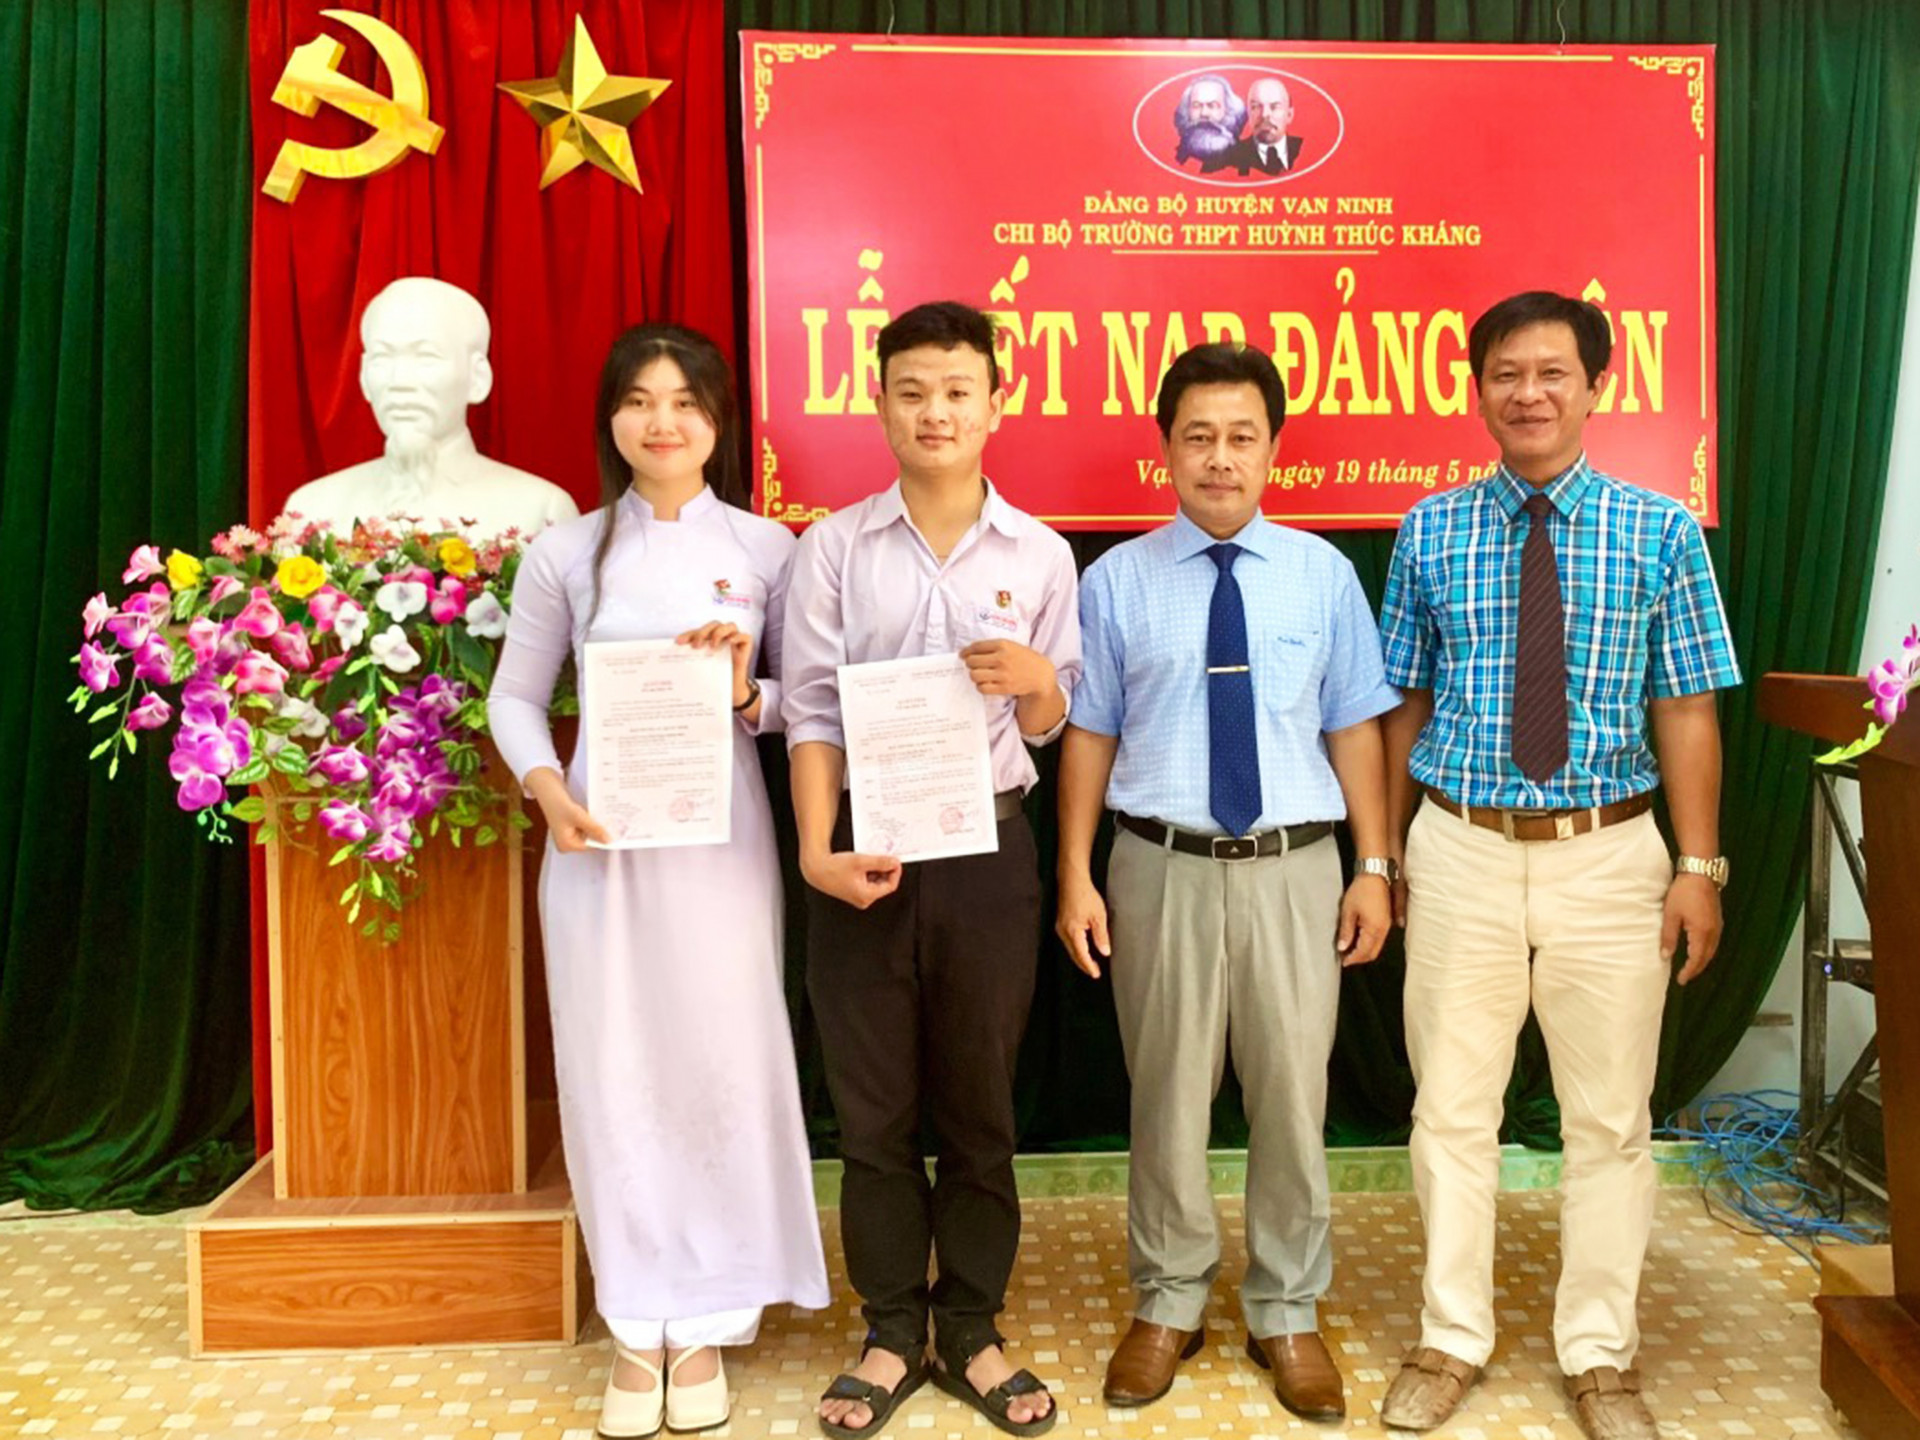 Chi bộ Trường THPT Huỳnh Thúc Kháng trao quyết định kết nạp đảng viên cho 2 học sinh Trần Phạm Hoàng Điệp và Nguyễn Minh Trí.